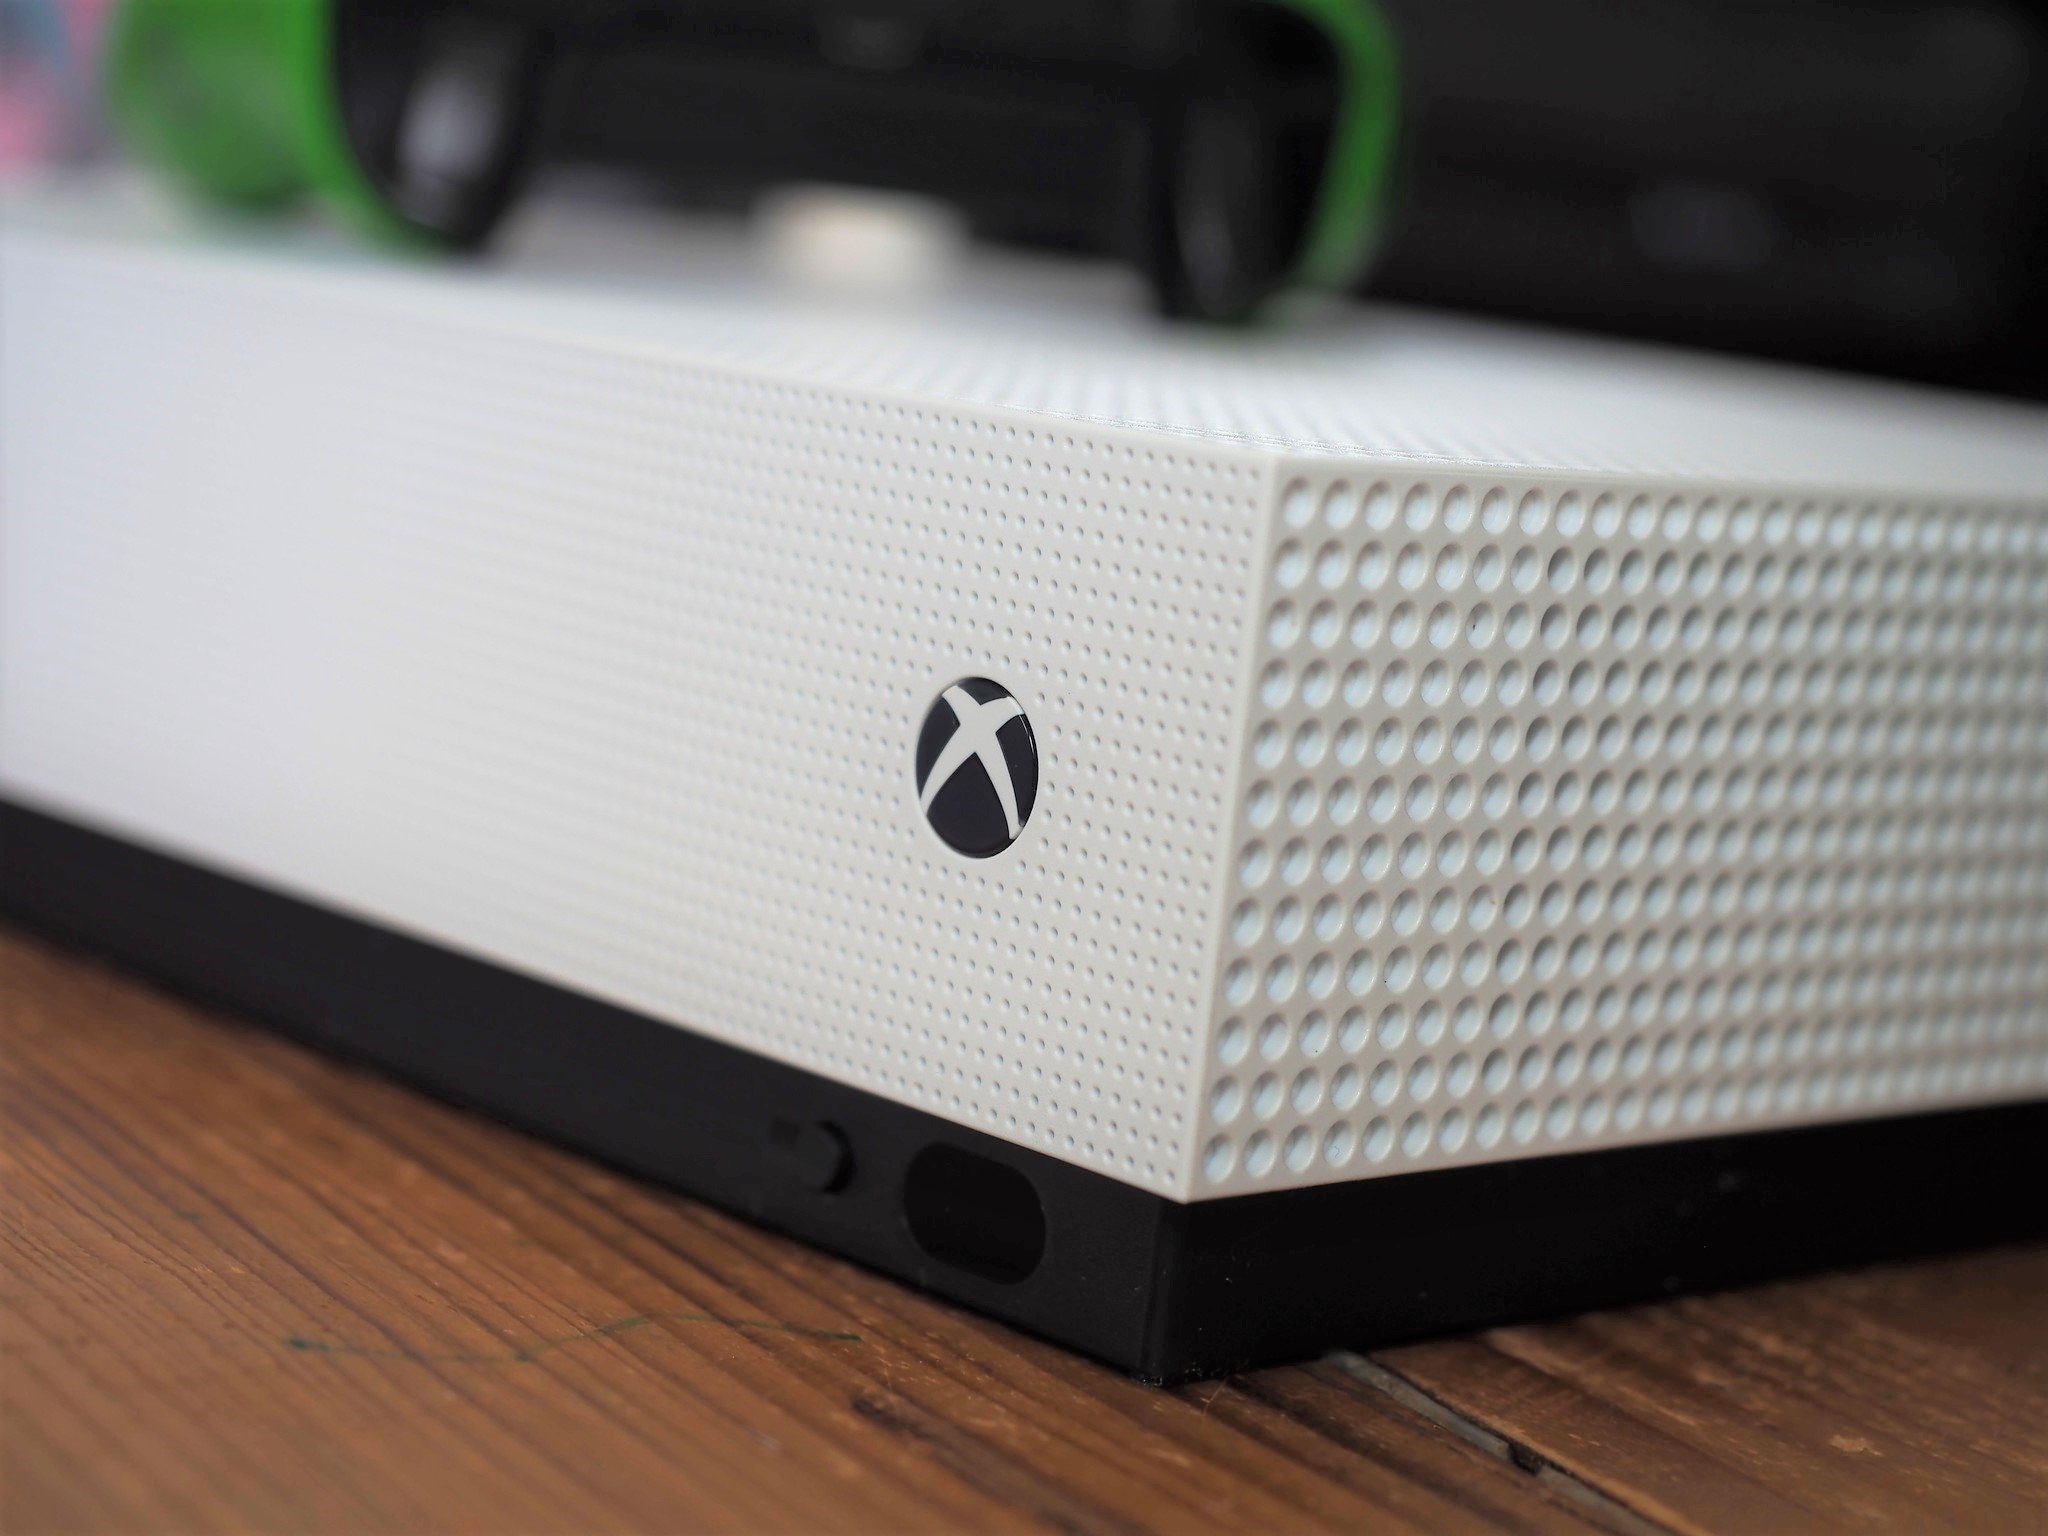 Het pad Voortdurende leerplan Does the Xbox One S support 4K UHD gaming? | Windows Central